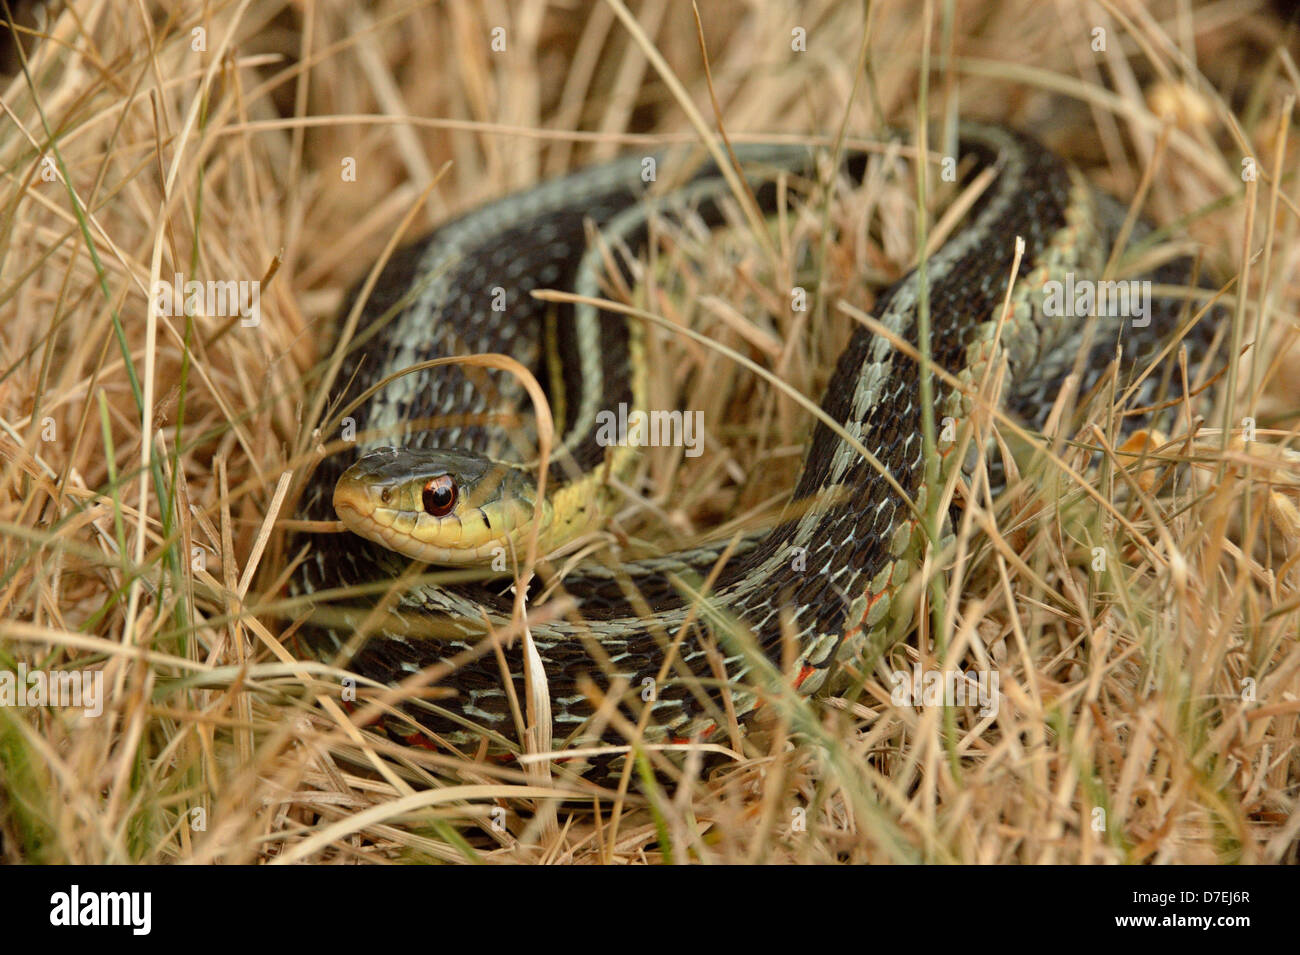 Common garter snake Thamnophis sirtalis avvolto a spirale stessa prendisole in erba Morta maggiore Sudbury Ontario Canada Foto Stock